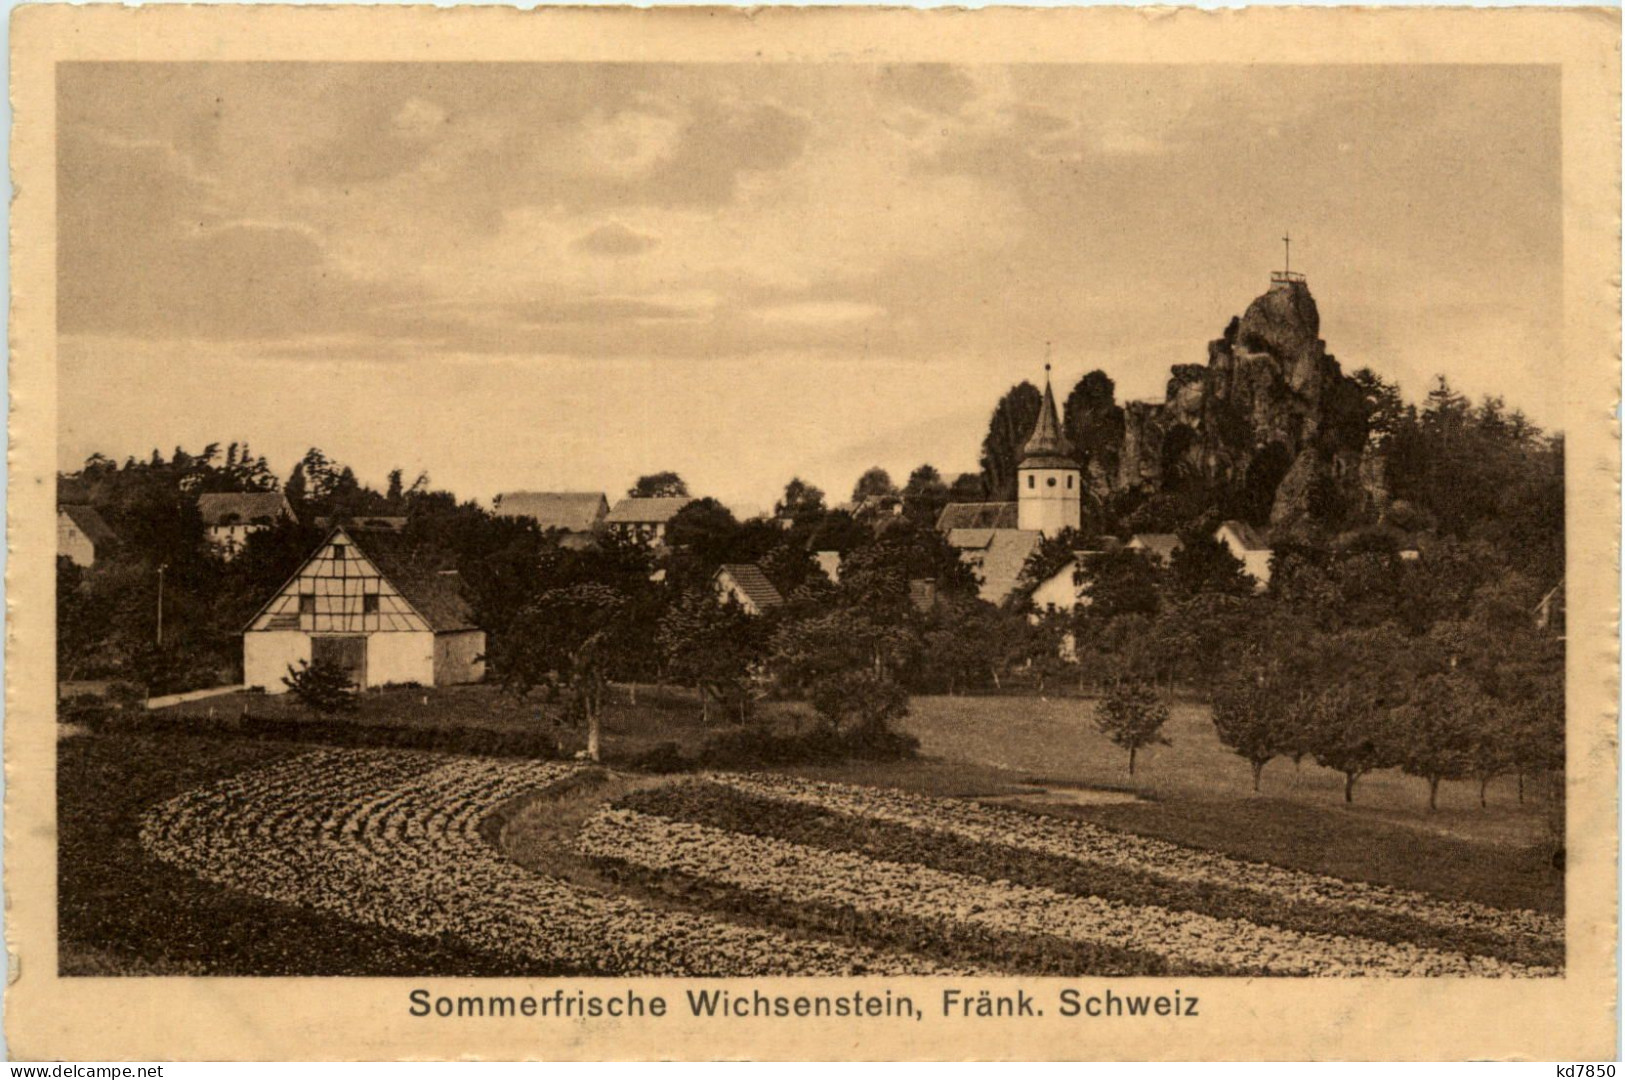 Wichsenstein, Fränk. Schweiz - Forchheim